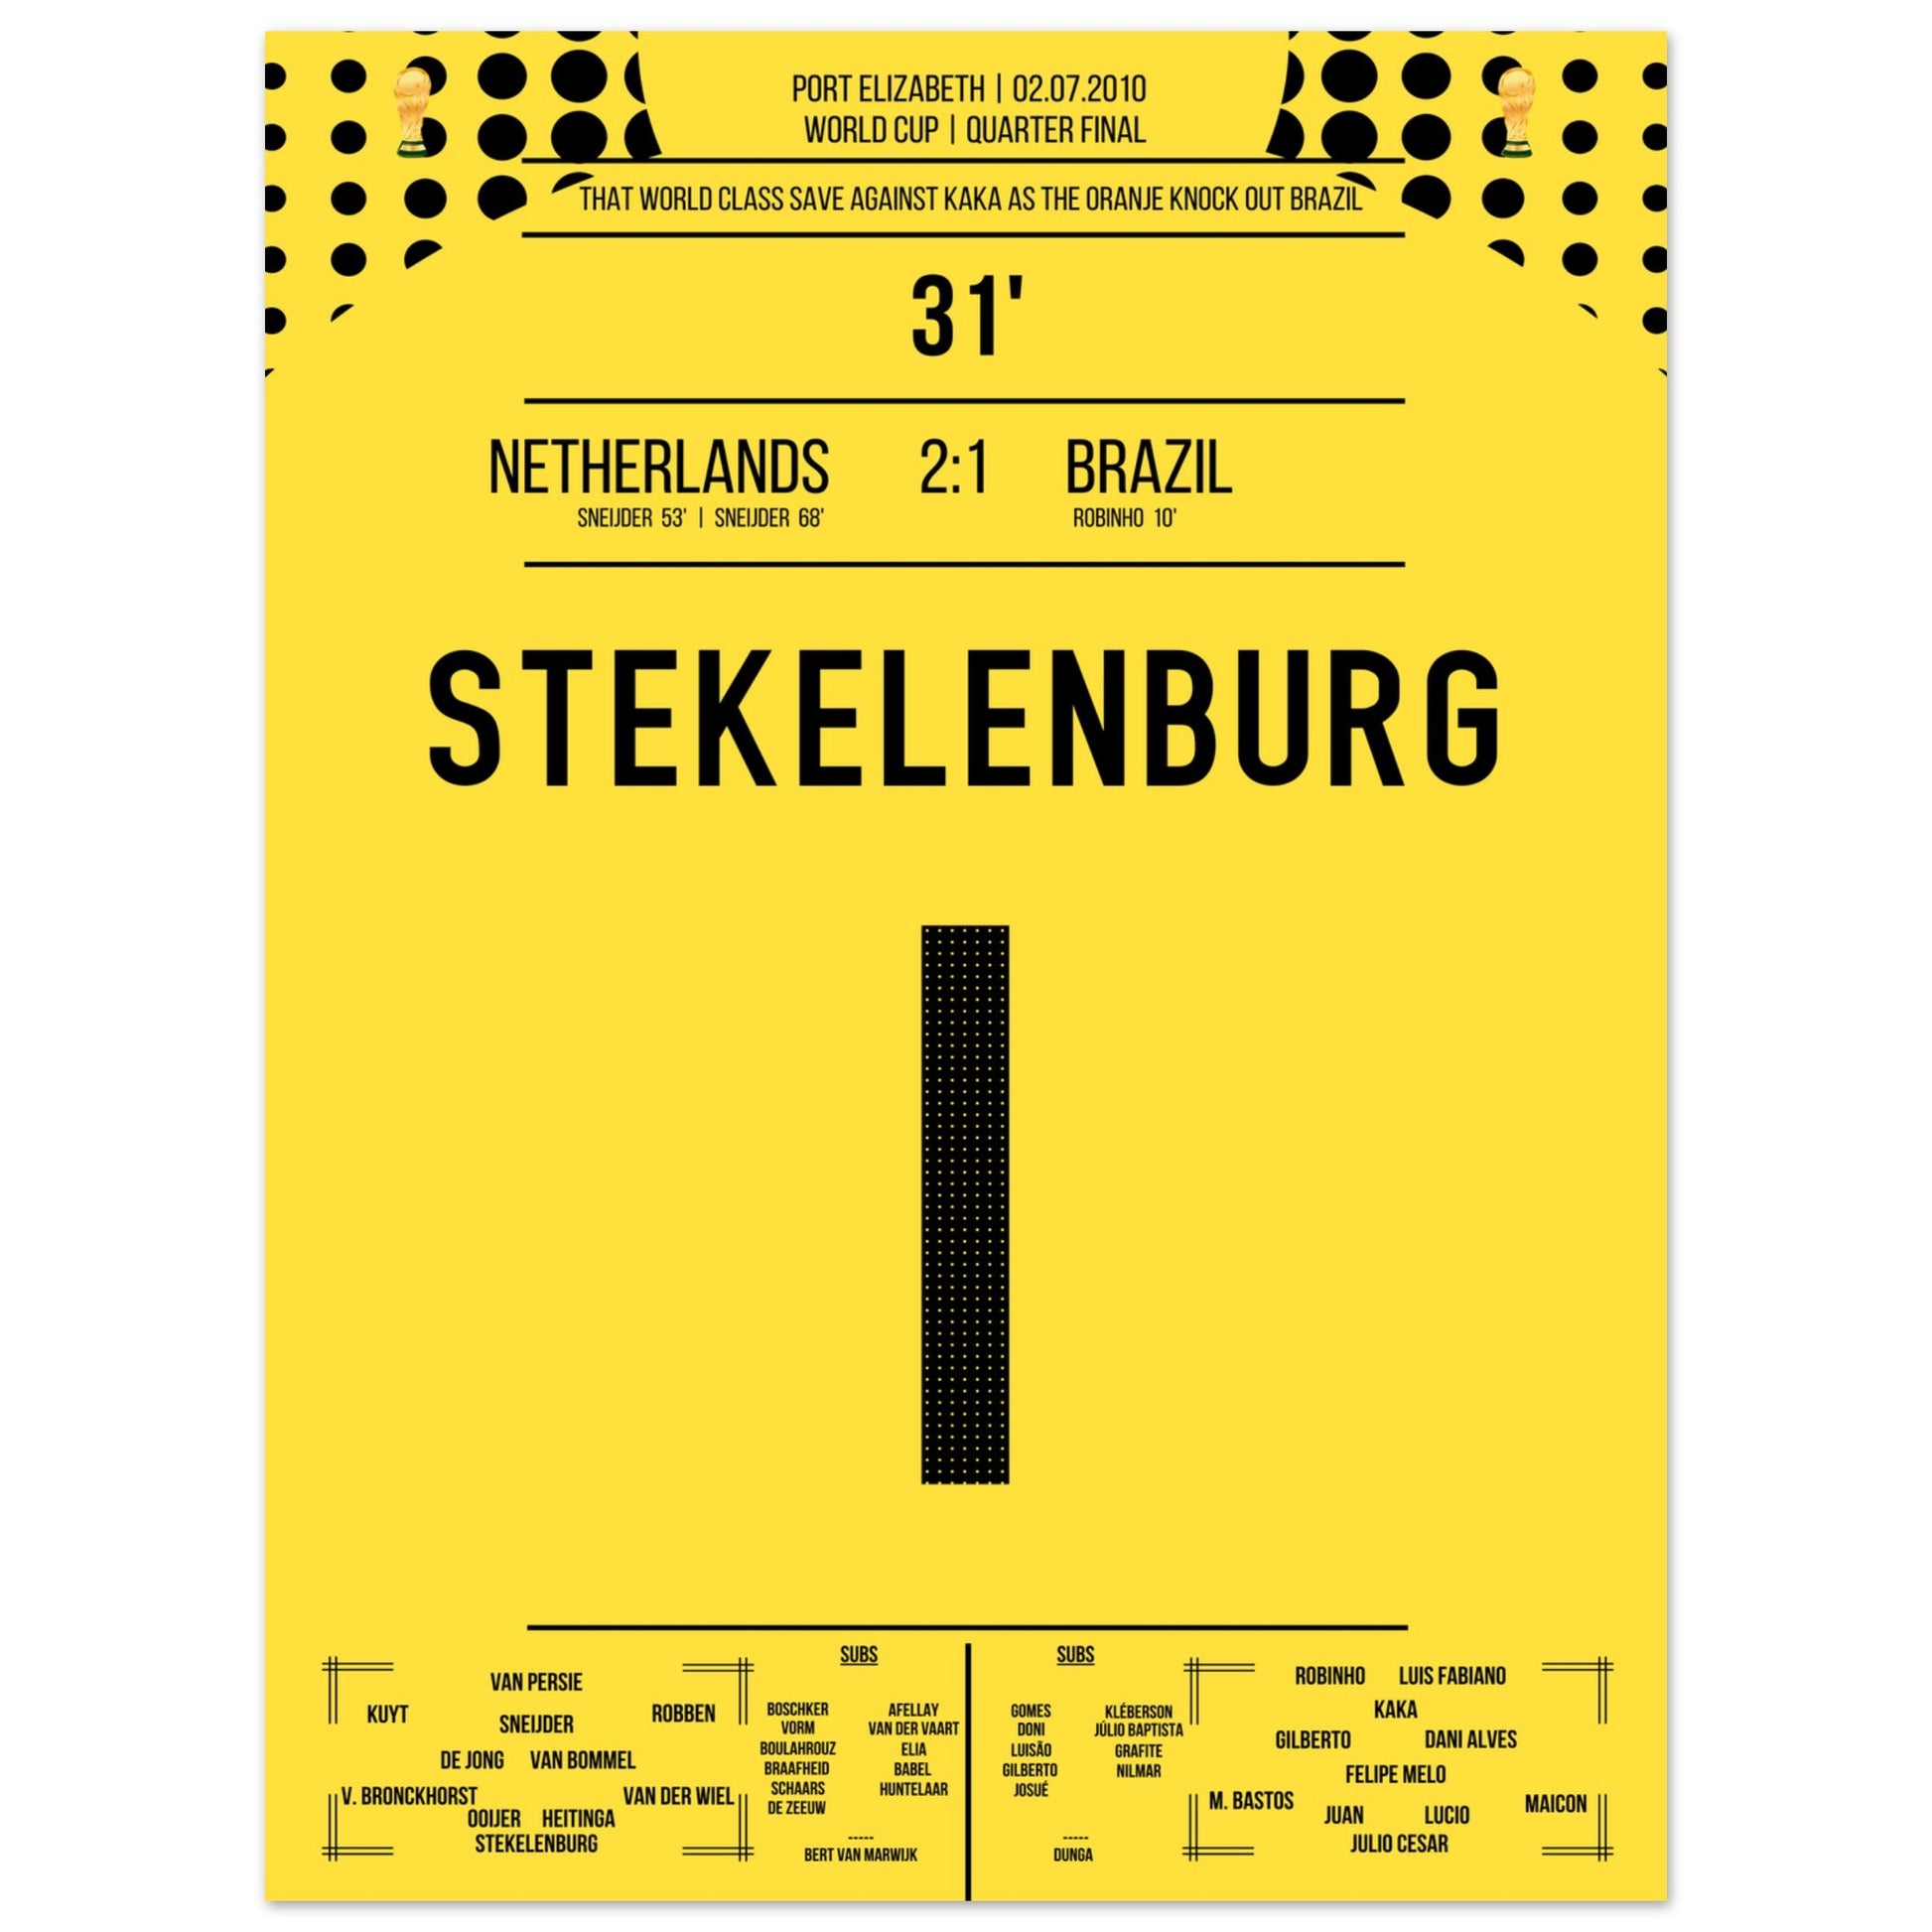 Stekelenburg's Weltklasse Aktion gegen Kaka bei der WM 2010 30x40-cm-12x16-Ohne-Rahmen